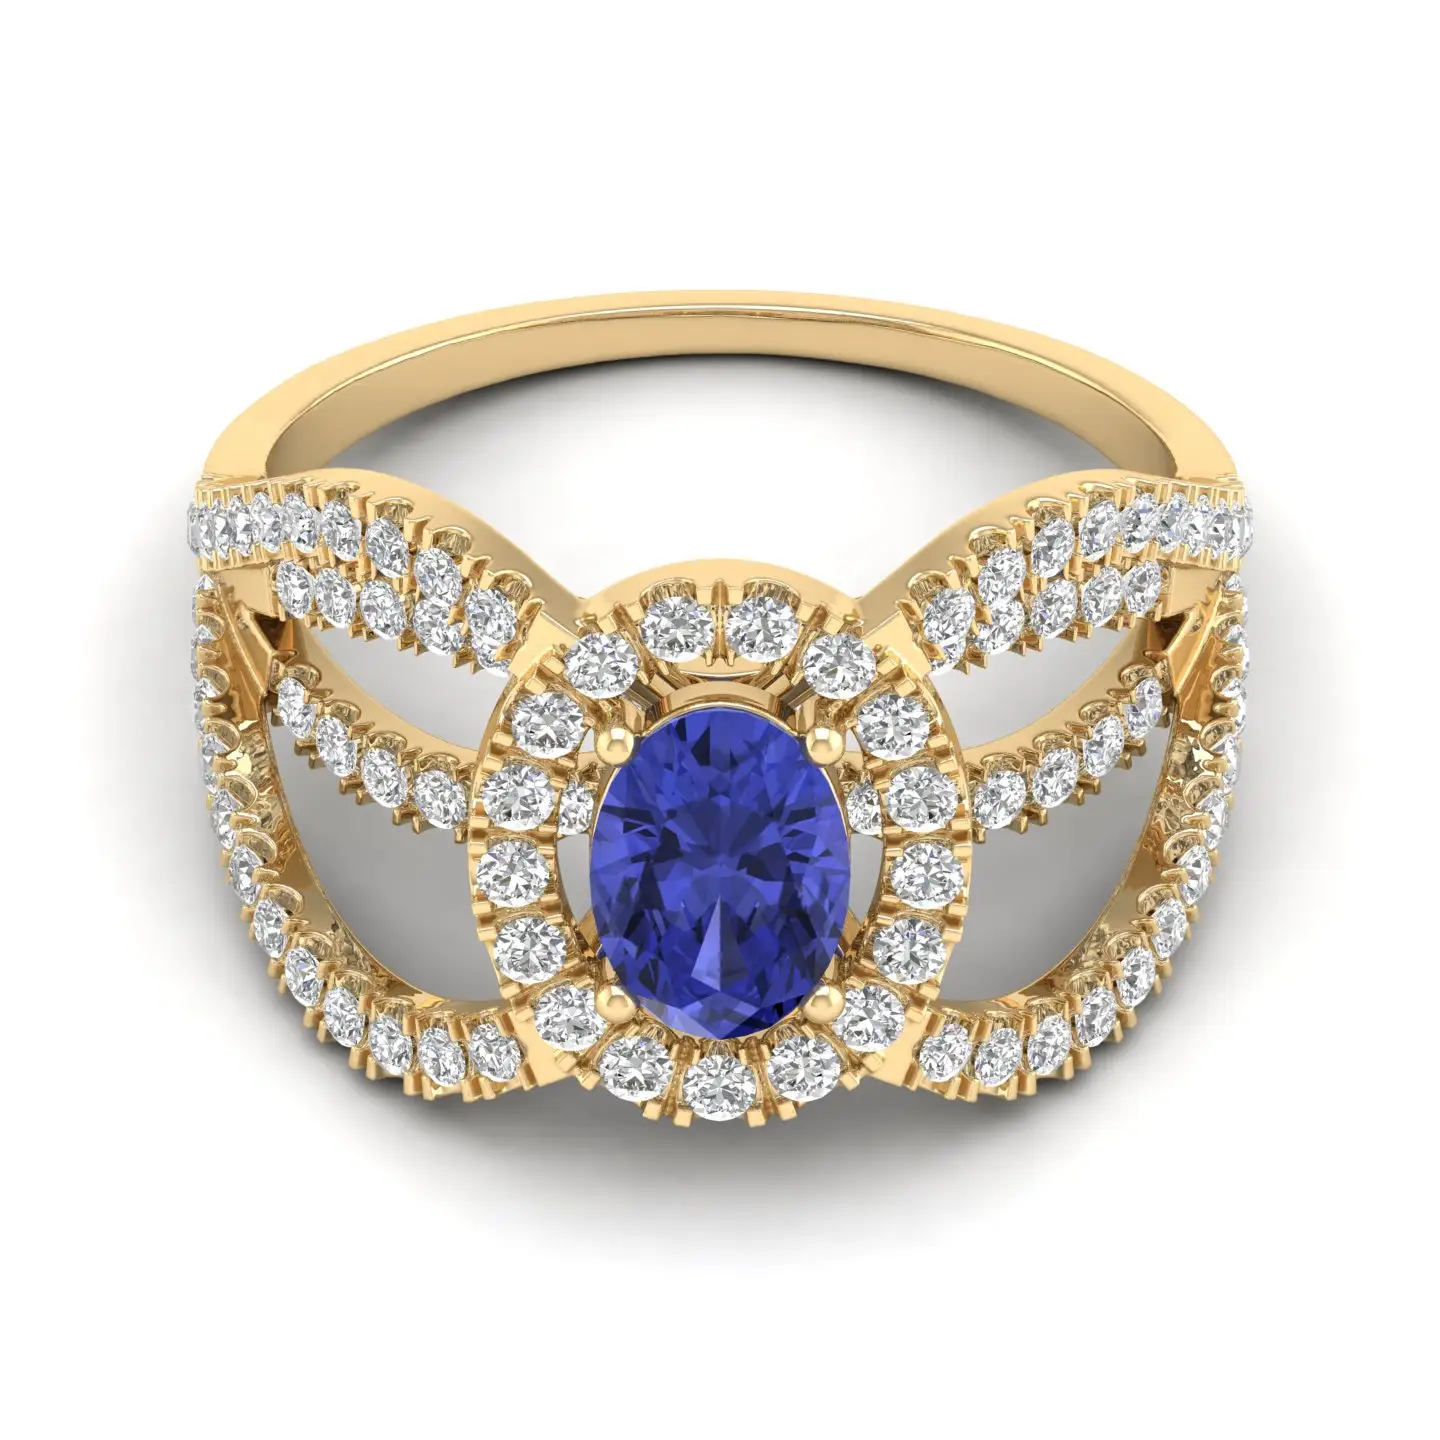 Batu permata Tanzanite biru 18k, cincin emas kuning padat berlian alami batu potong Oval Tanzanite cincin buatan tangan emas padat